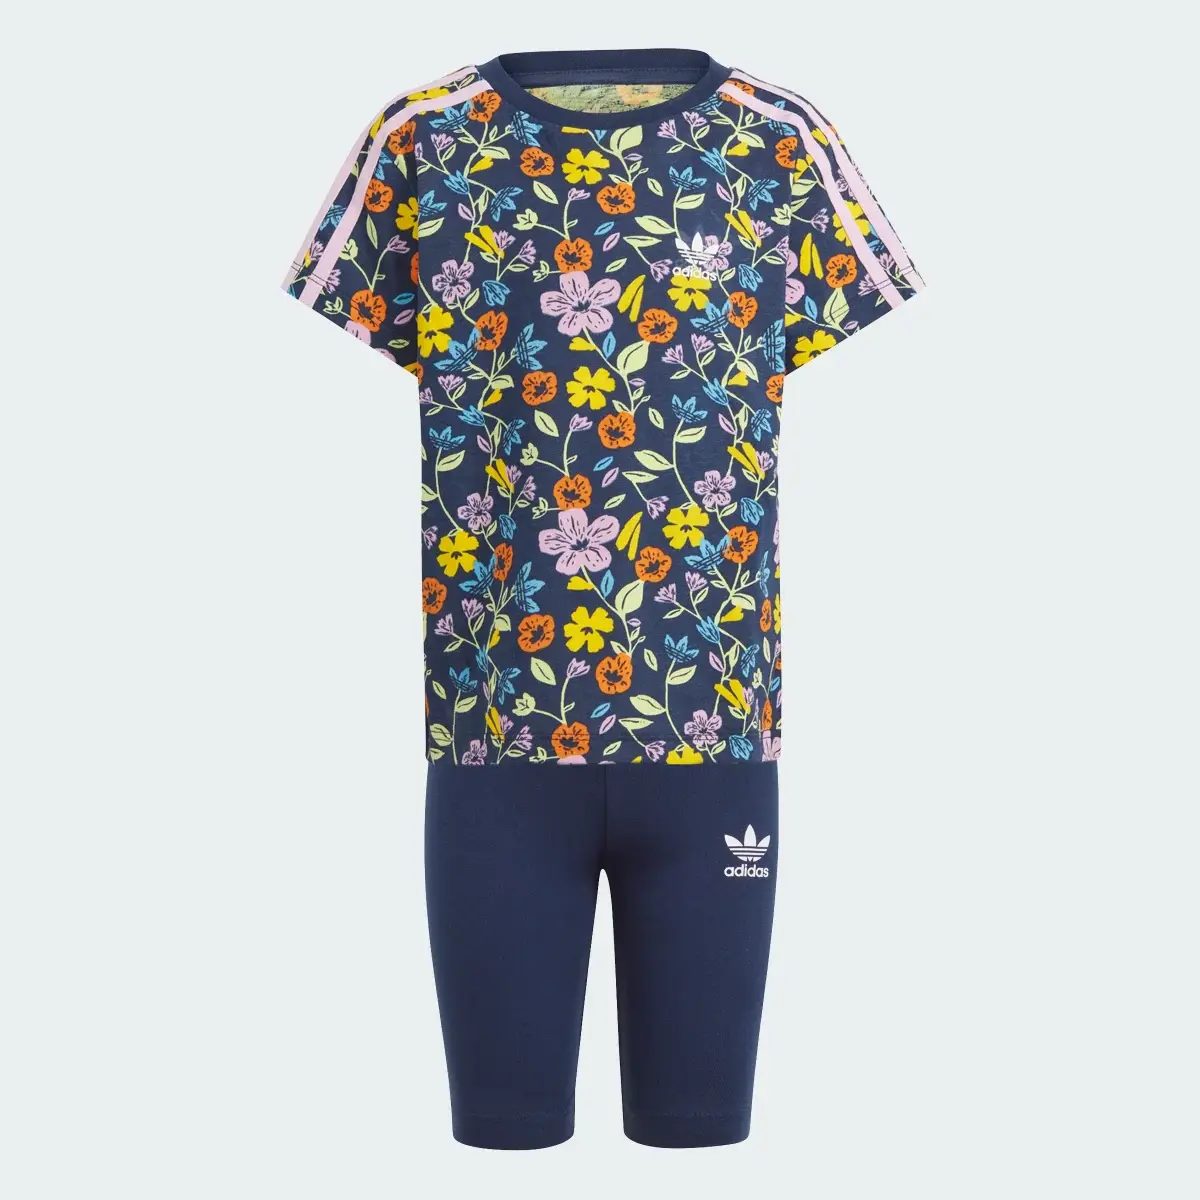 Adidas Floral Cycling Shorts and Tee Set. 1